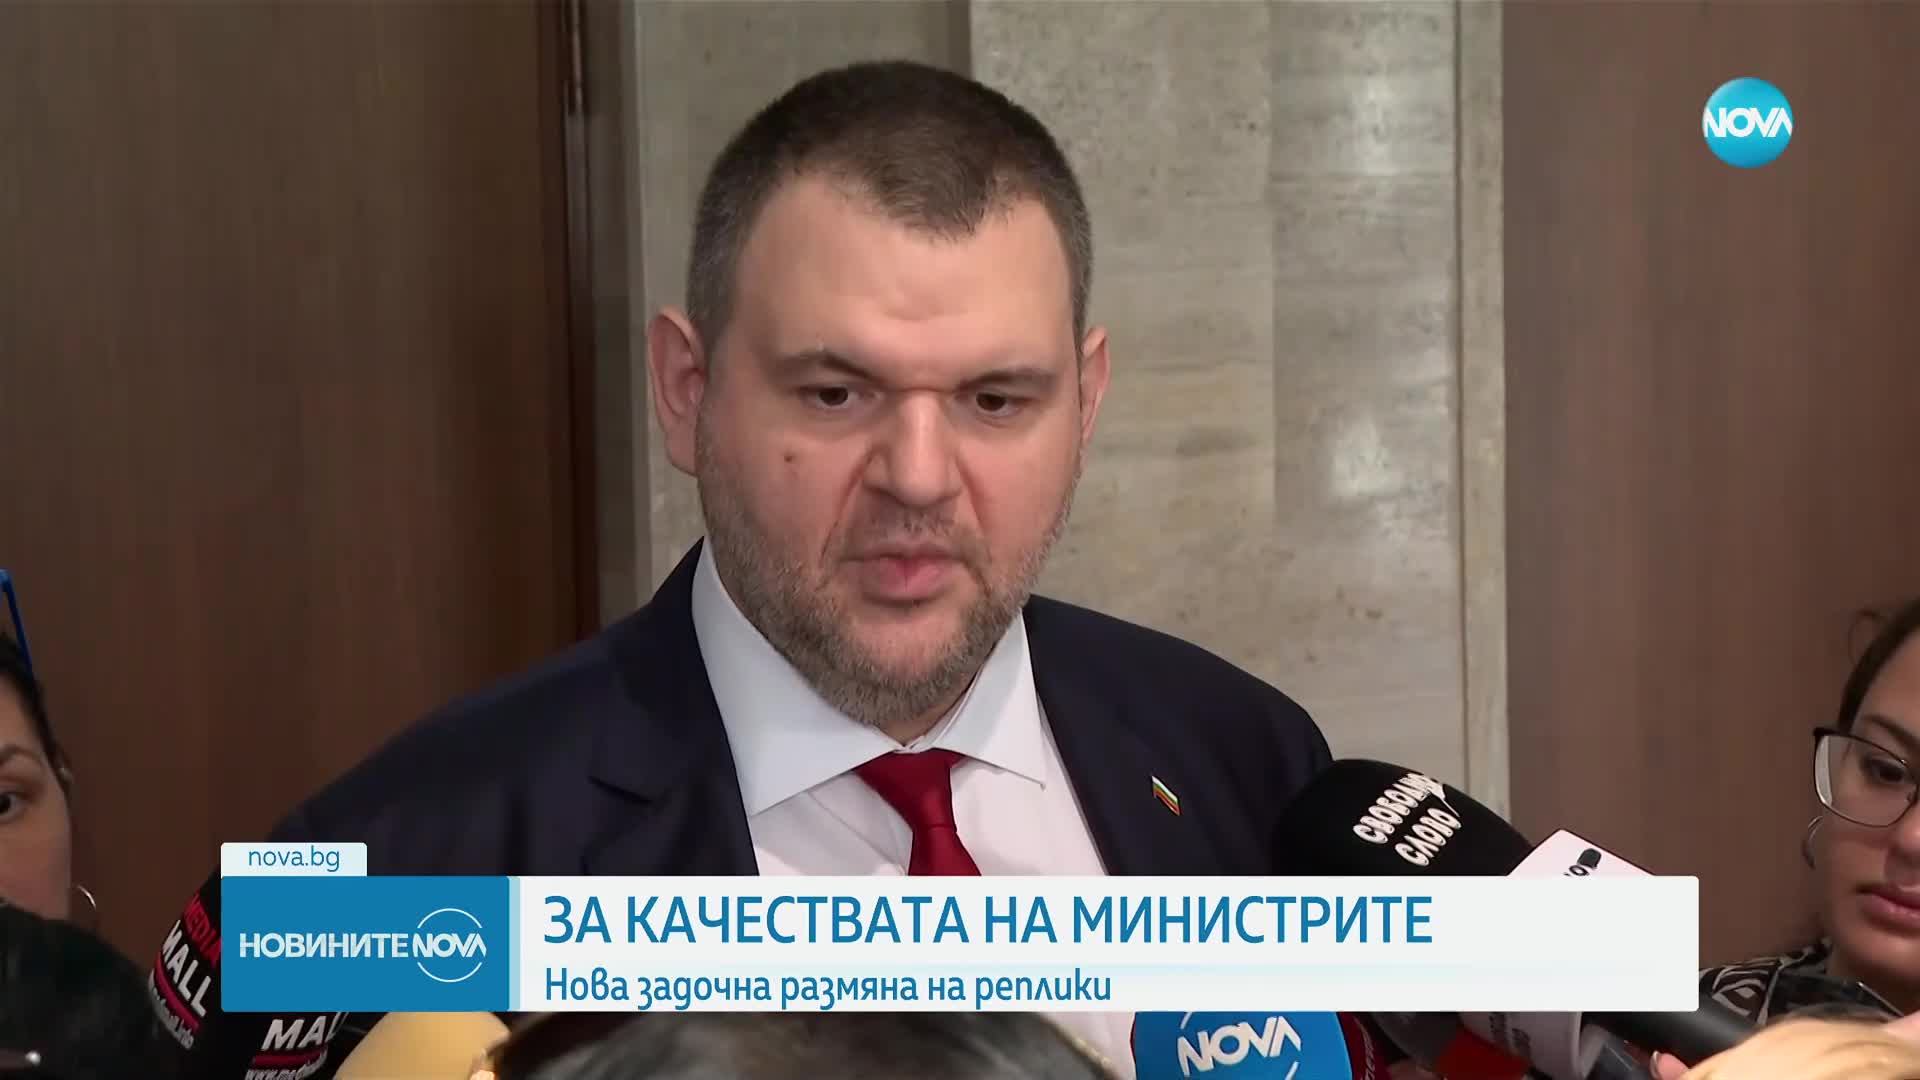 Борисов: Ако ДПС има хора, които да се справят по-добре с работата, защо да не станат министри